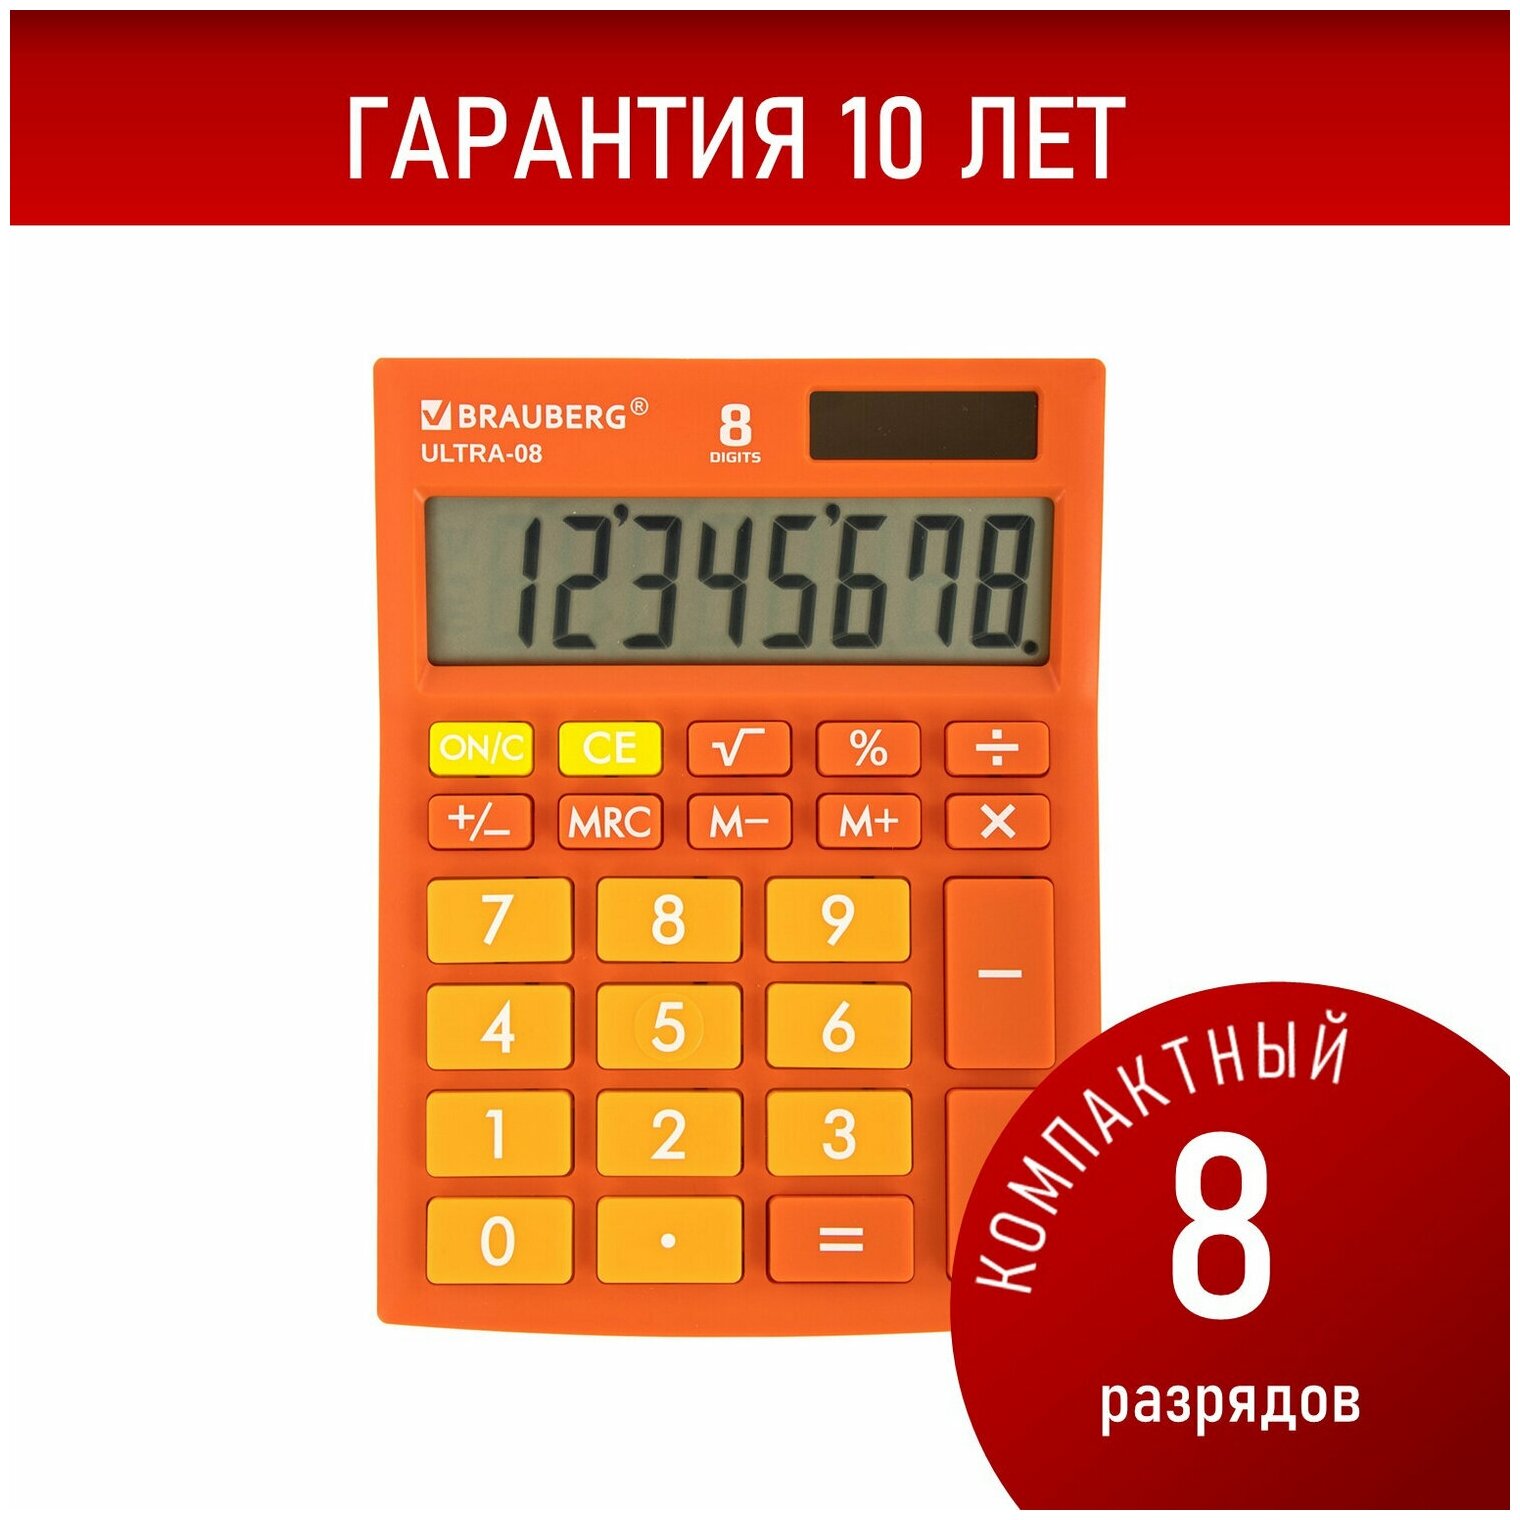 Калькулятор настольный BRAUBERG ULTRA-08-RG компактный (154x115) 8 разрядов двойное питание оранжевый 250511